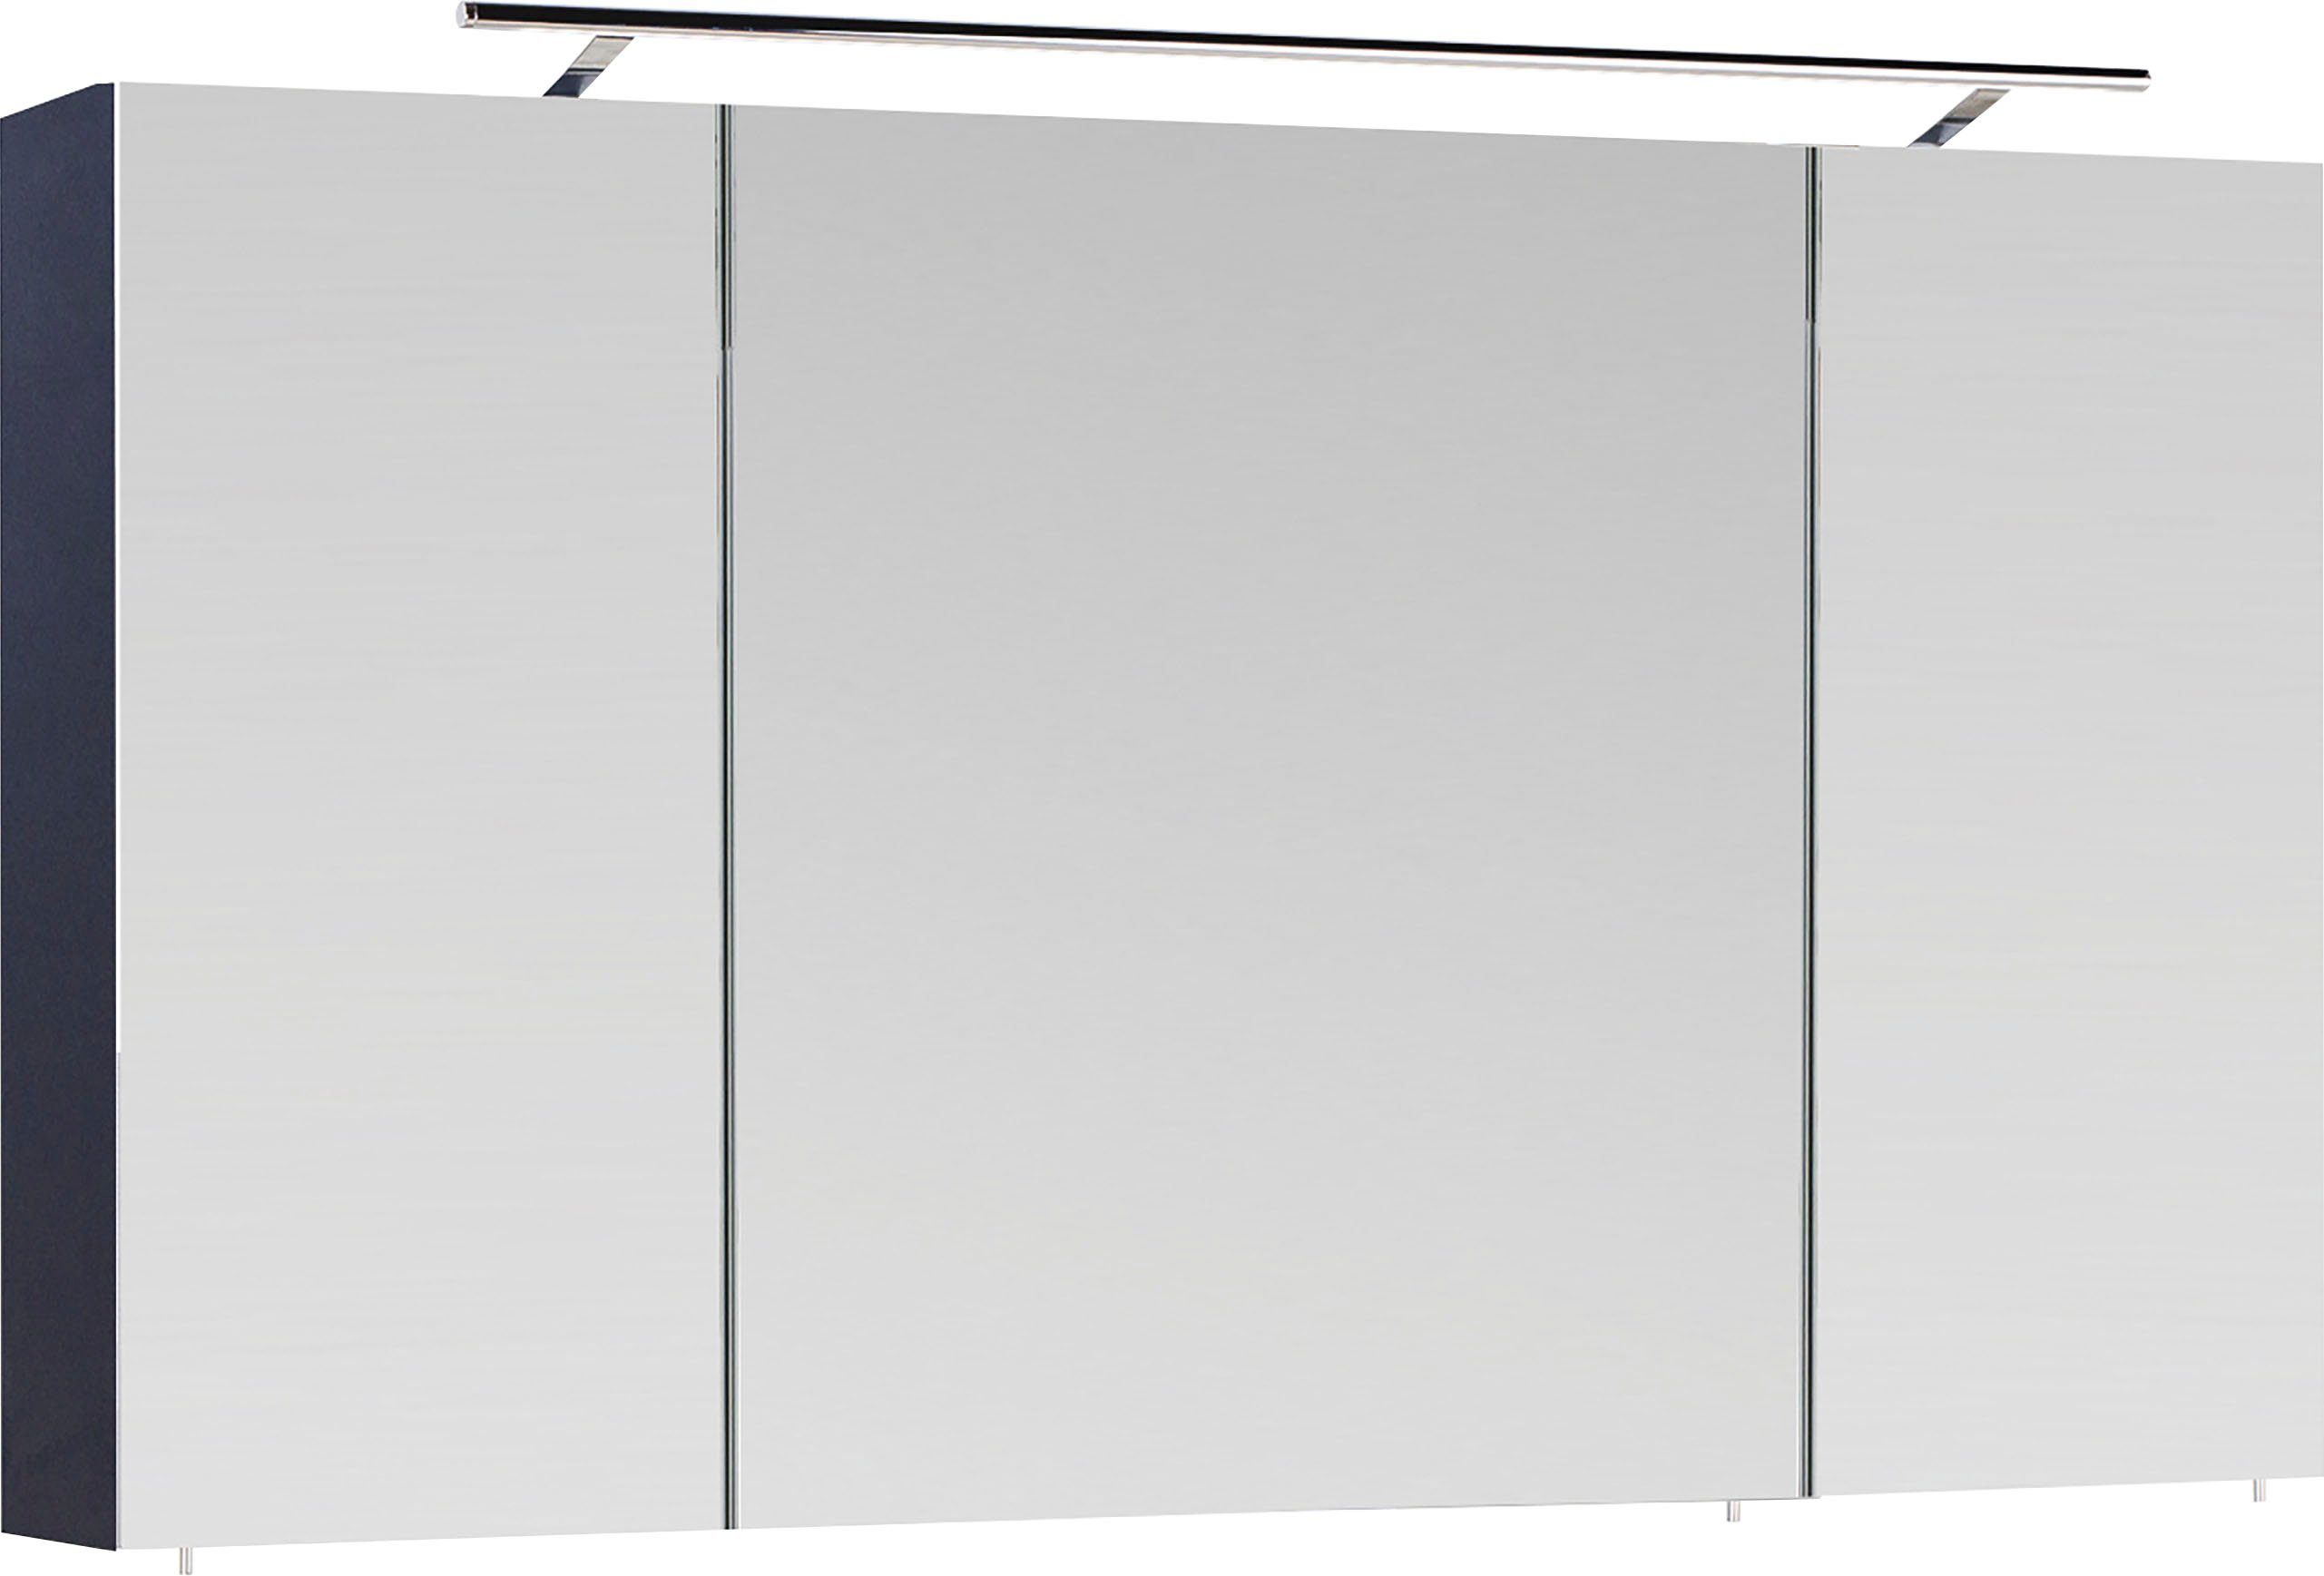 MARLIN Spiegelschrank 3040, Breite 120 cm anthrazit | anthrazit | Spiegelschränke